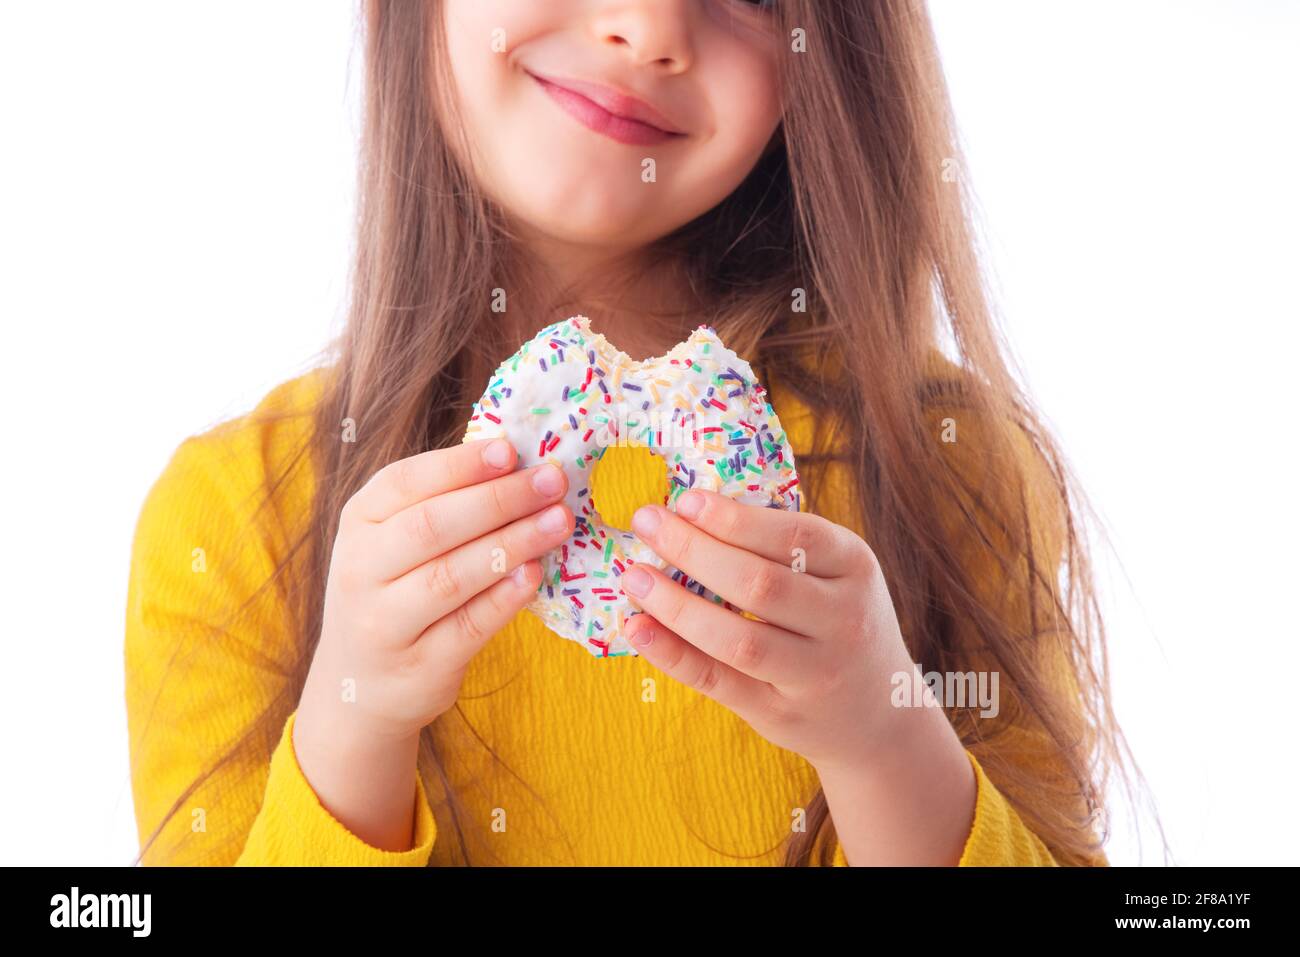 Sweet little girl eating white donut Stock Photo